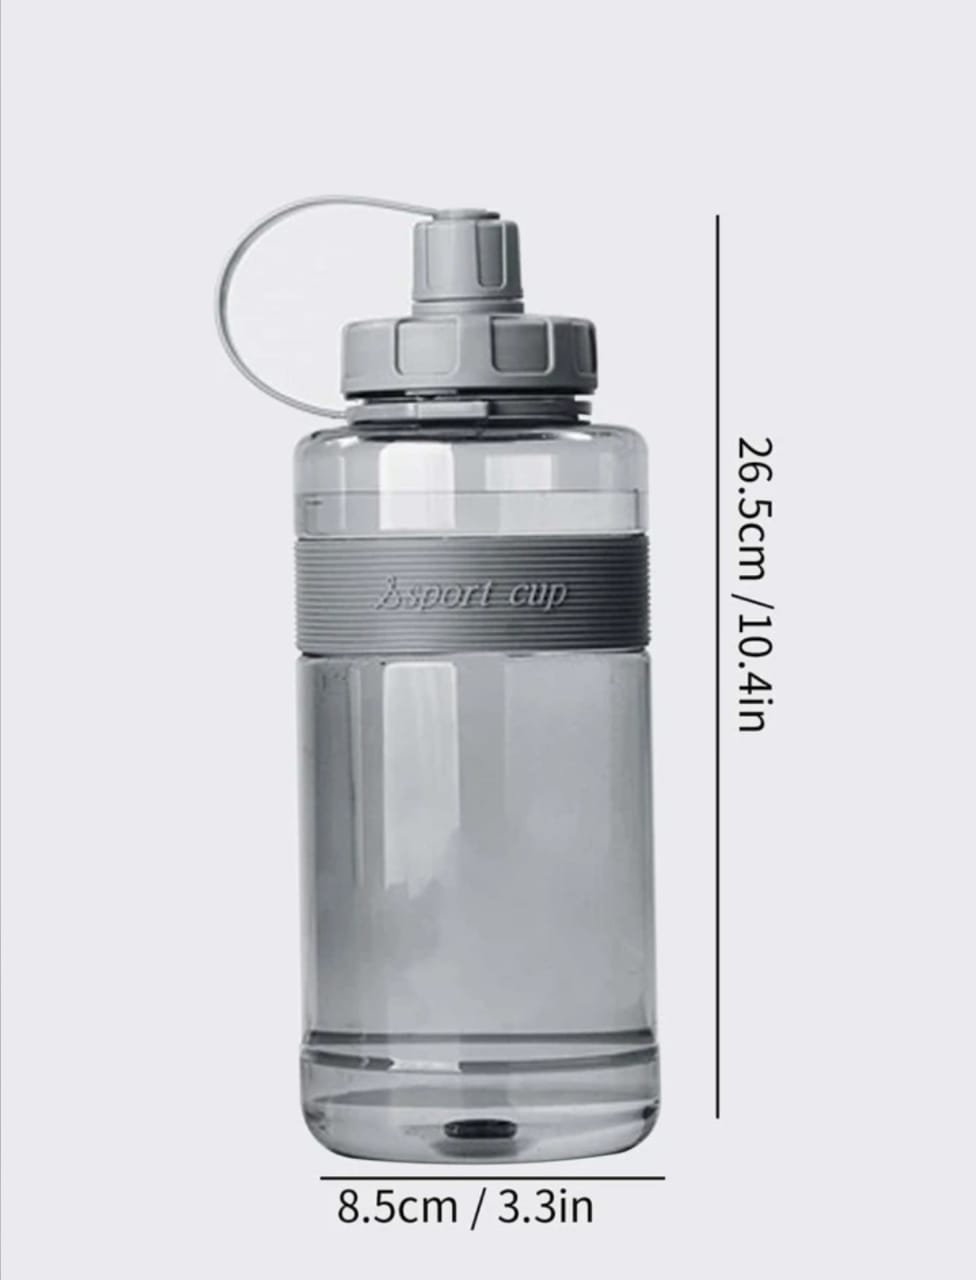 500 ml water bottle